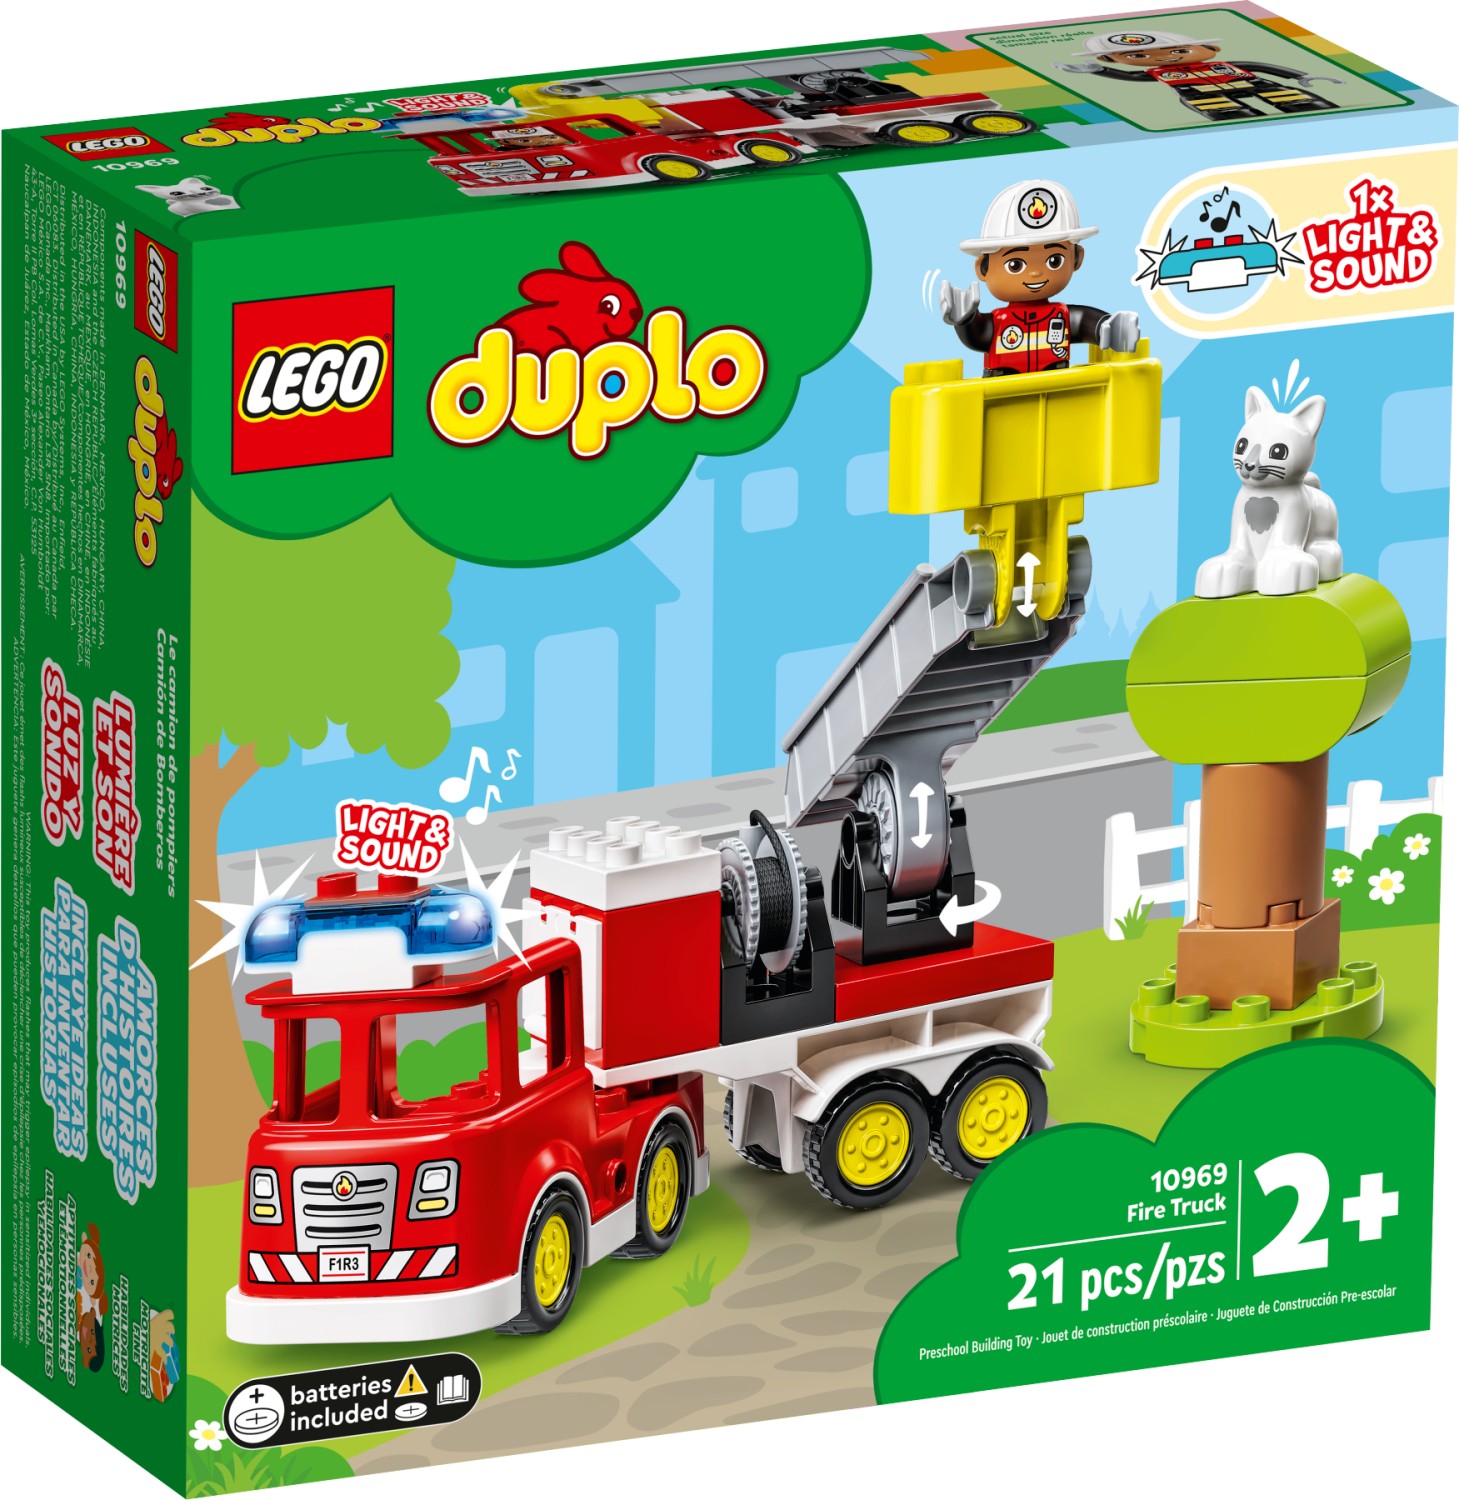 LEGO DUPLO - € Deutschland | (2024) ab Feuerwehrauto Geizhals 18,00 Preisvergleich (10969)